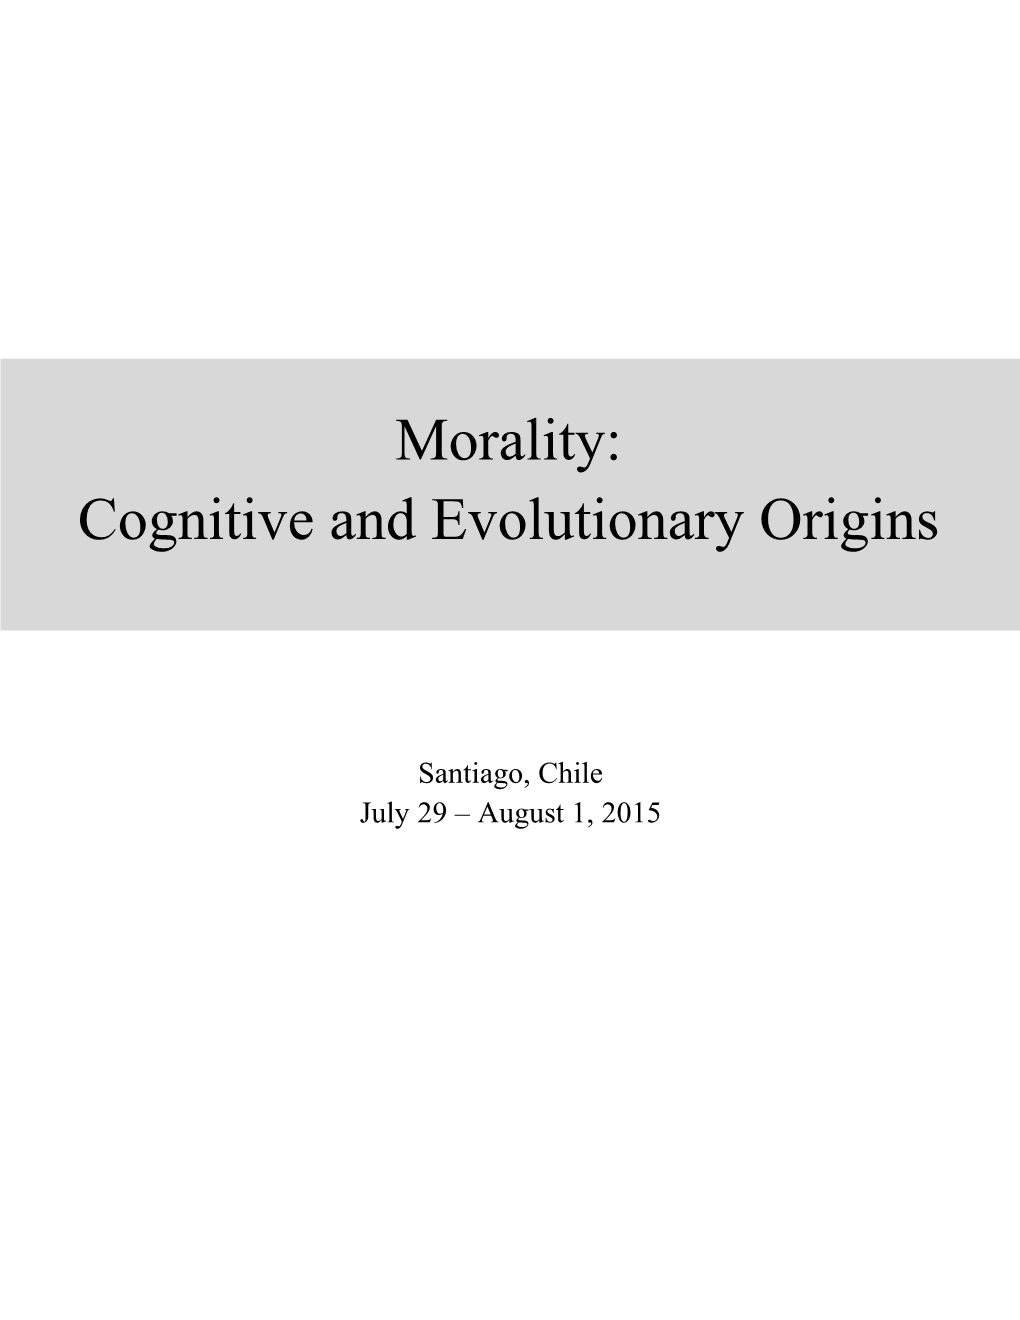 Morality: Cognitive and Evolutionary Origins